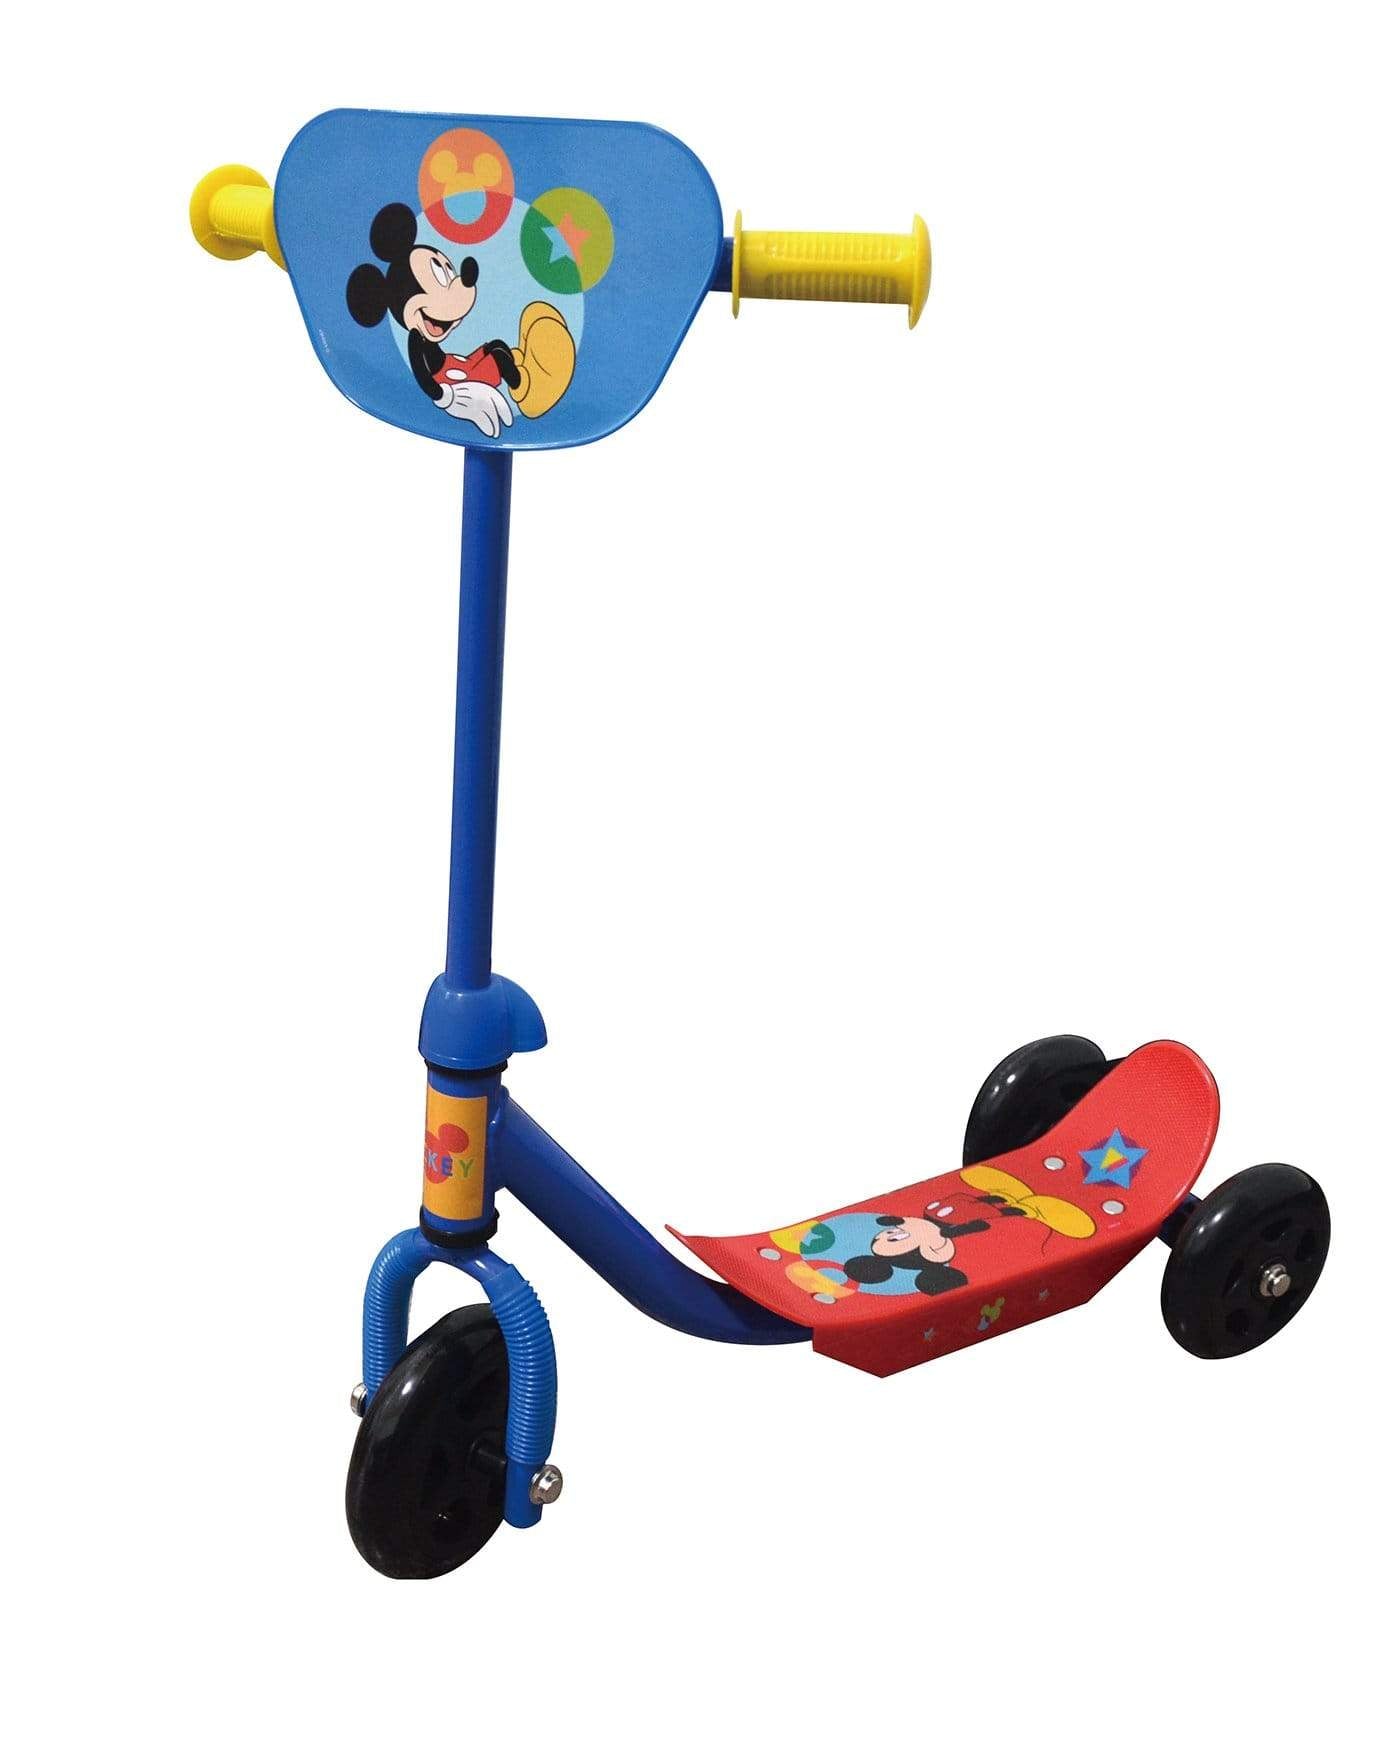 קורקינט 3 גלגלים מיקי מאוס - zrizi toys